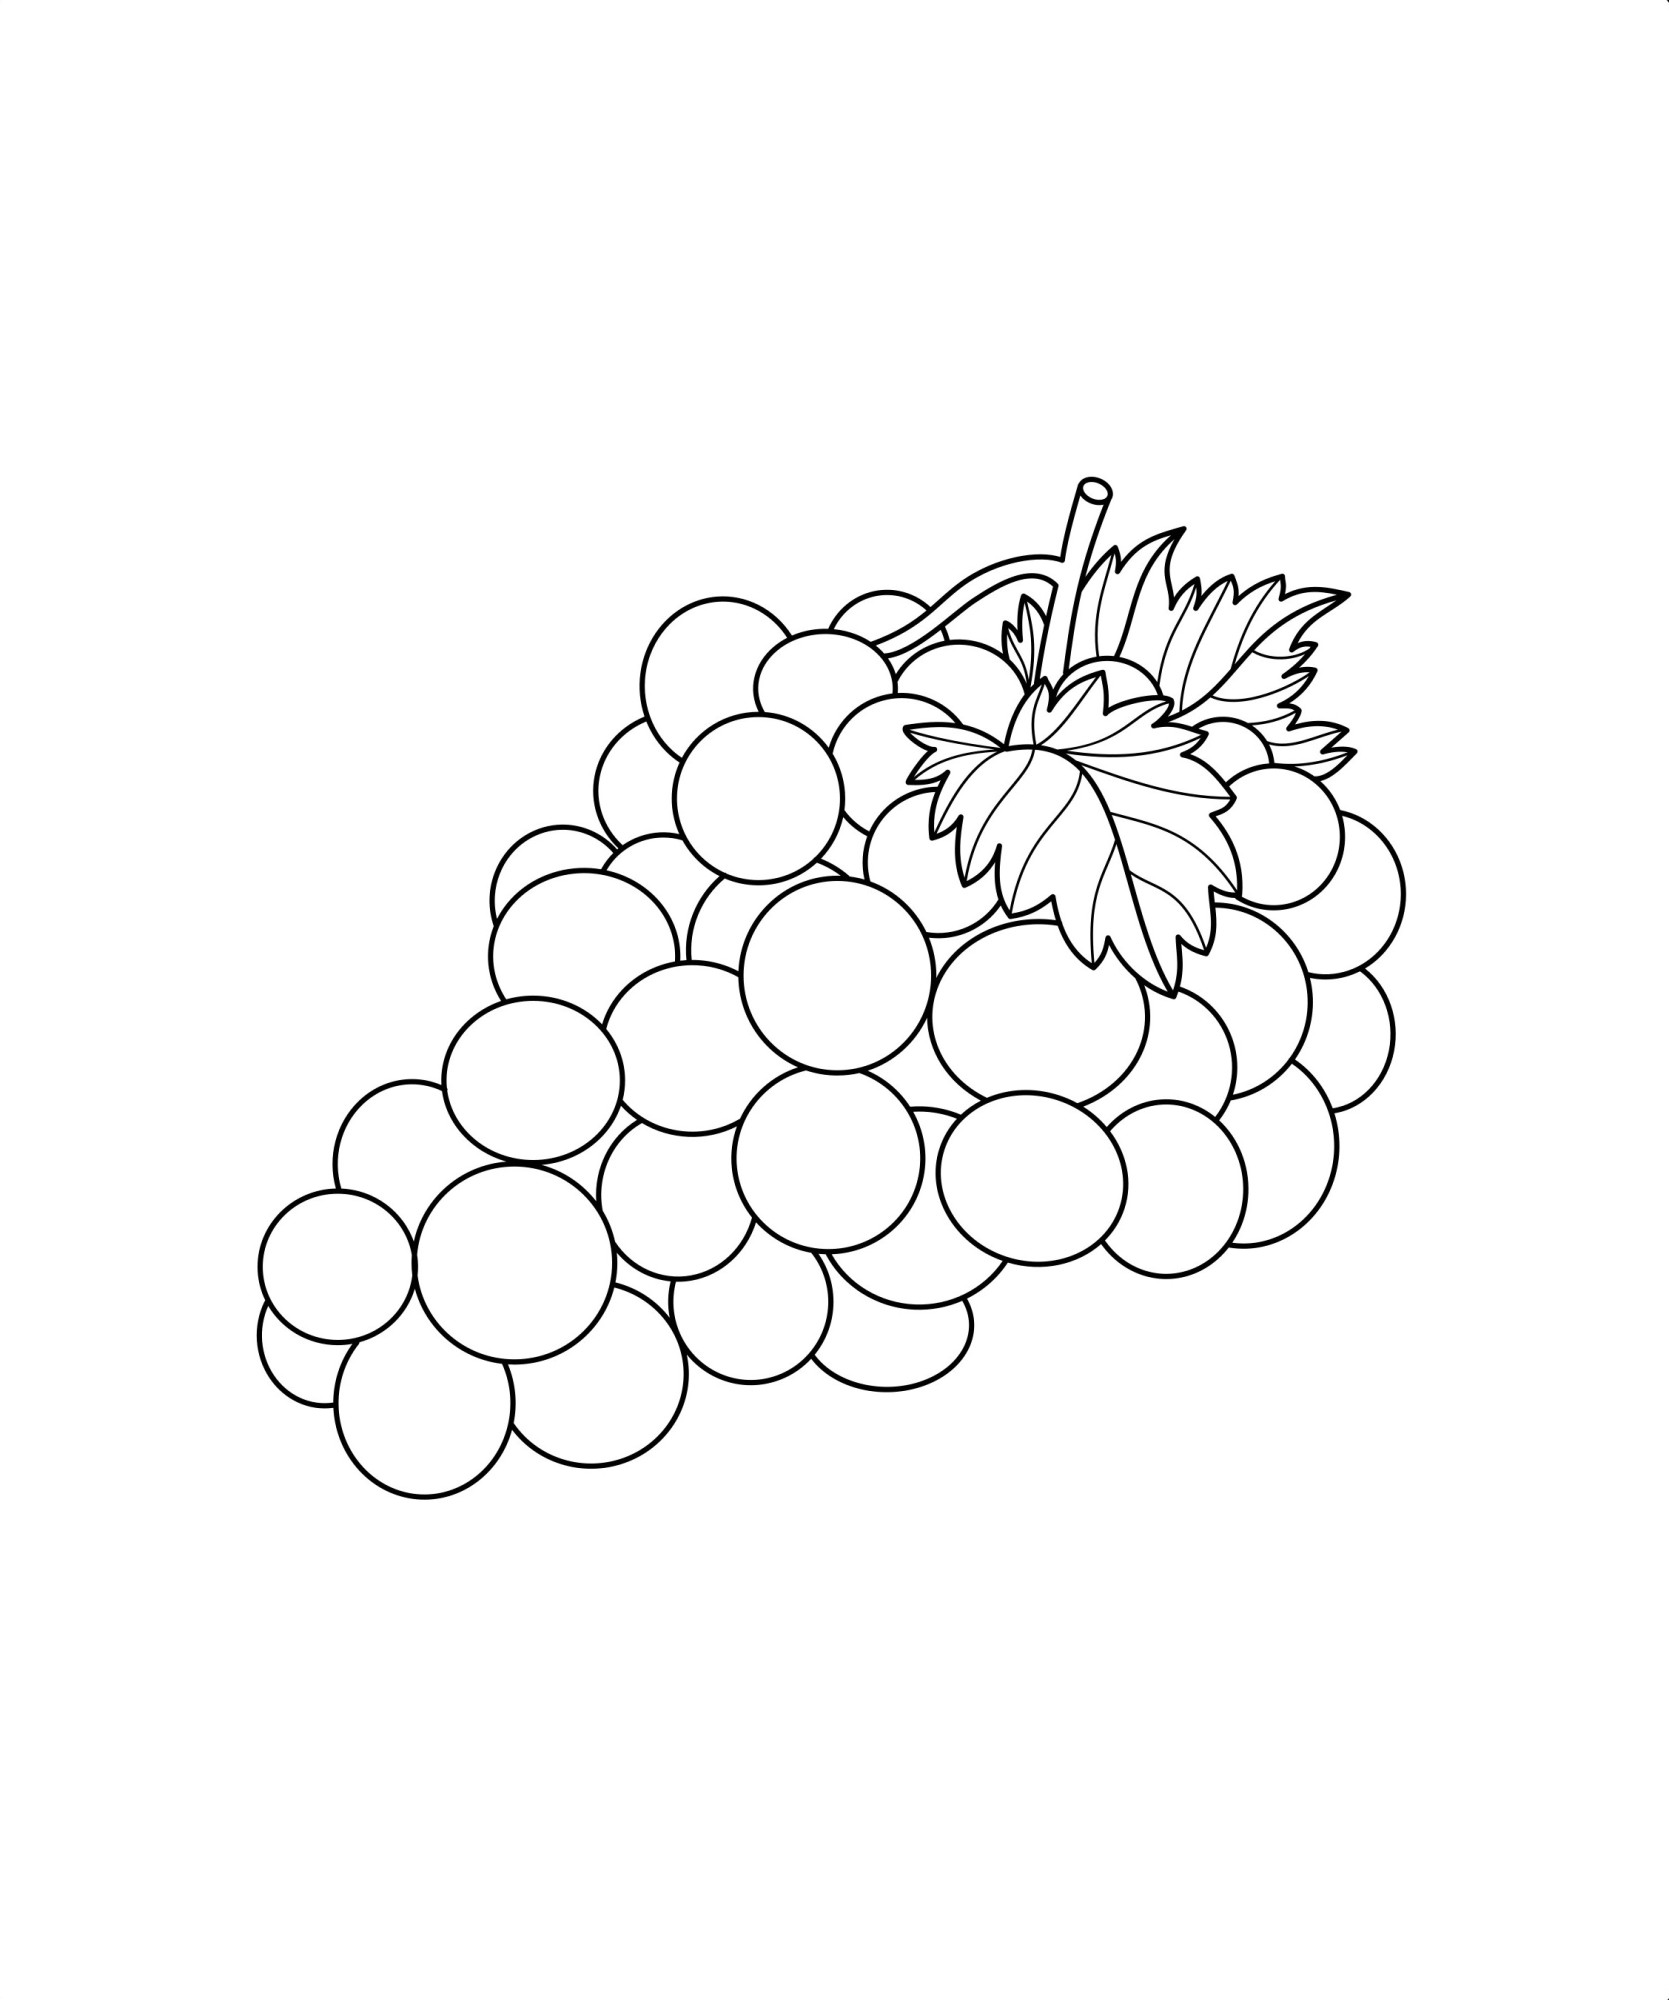 Раскраска для детей: виноград с листьями